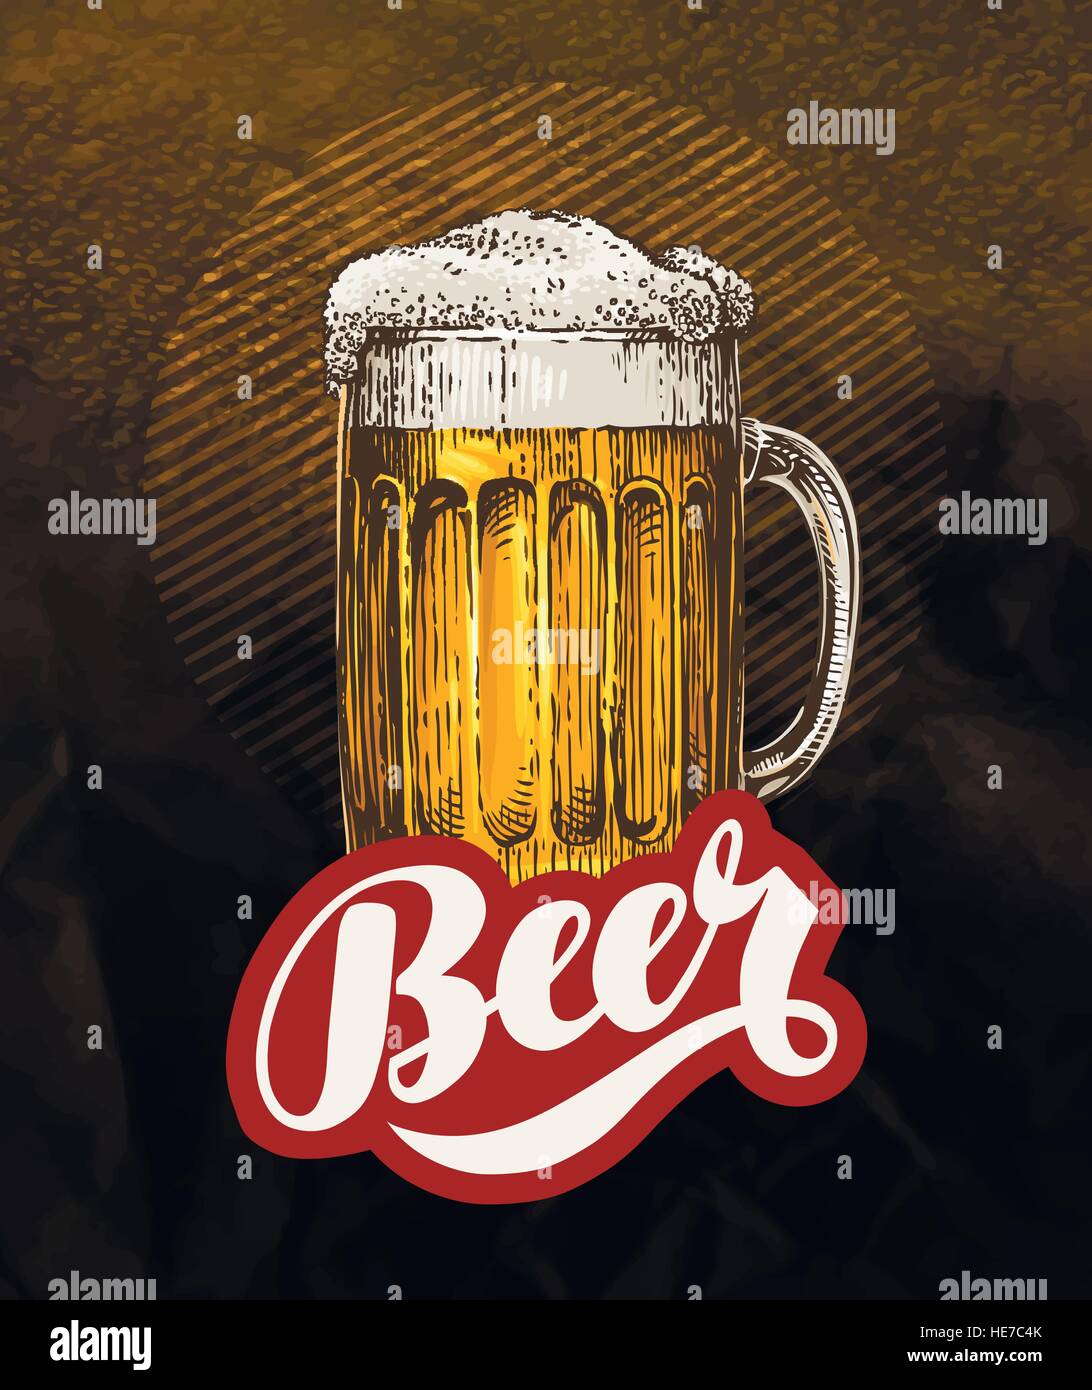 Frische fertige Bier. Vintage Poster für kaltes Bier. Vektor-illustration Stock Vektor